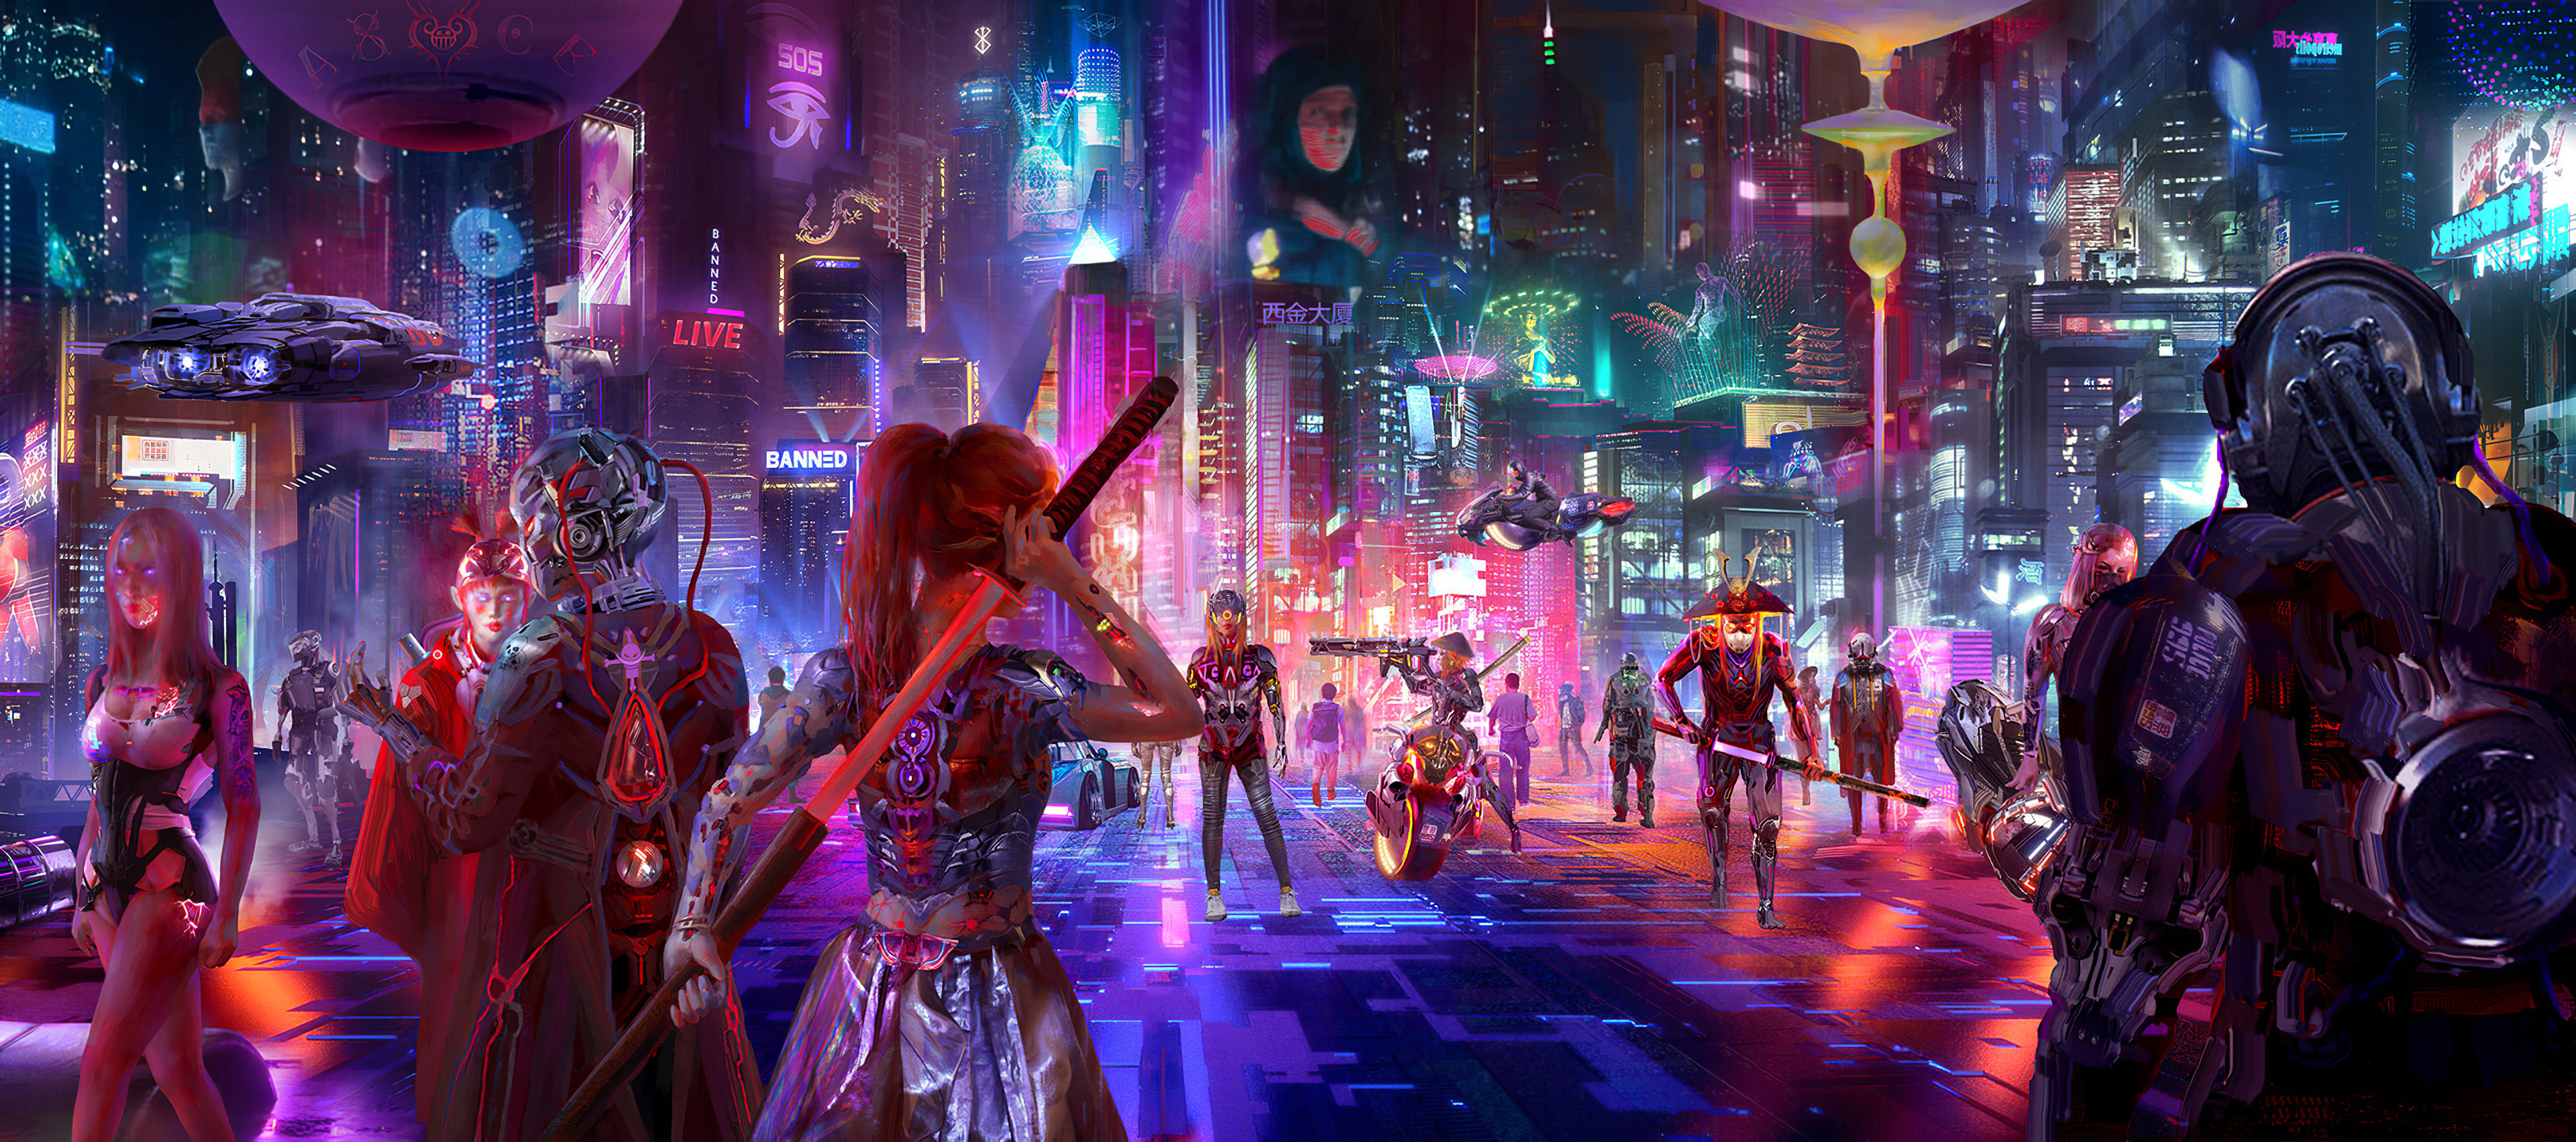 Hình nền  Cyberpunk 2077 khoa học viễn tưởng retro science fiction  Neon xe hơi Video Game Art Cô gái trò chơi điện tử 3840x2160   Kenhung1405  1585003  Hình nền đẹp hd  WallHere